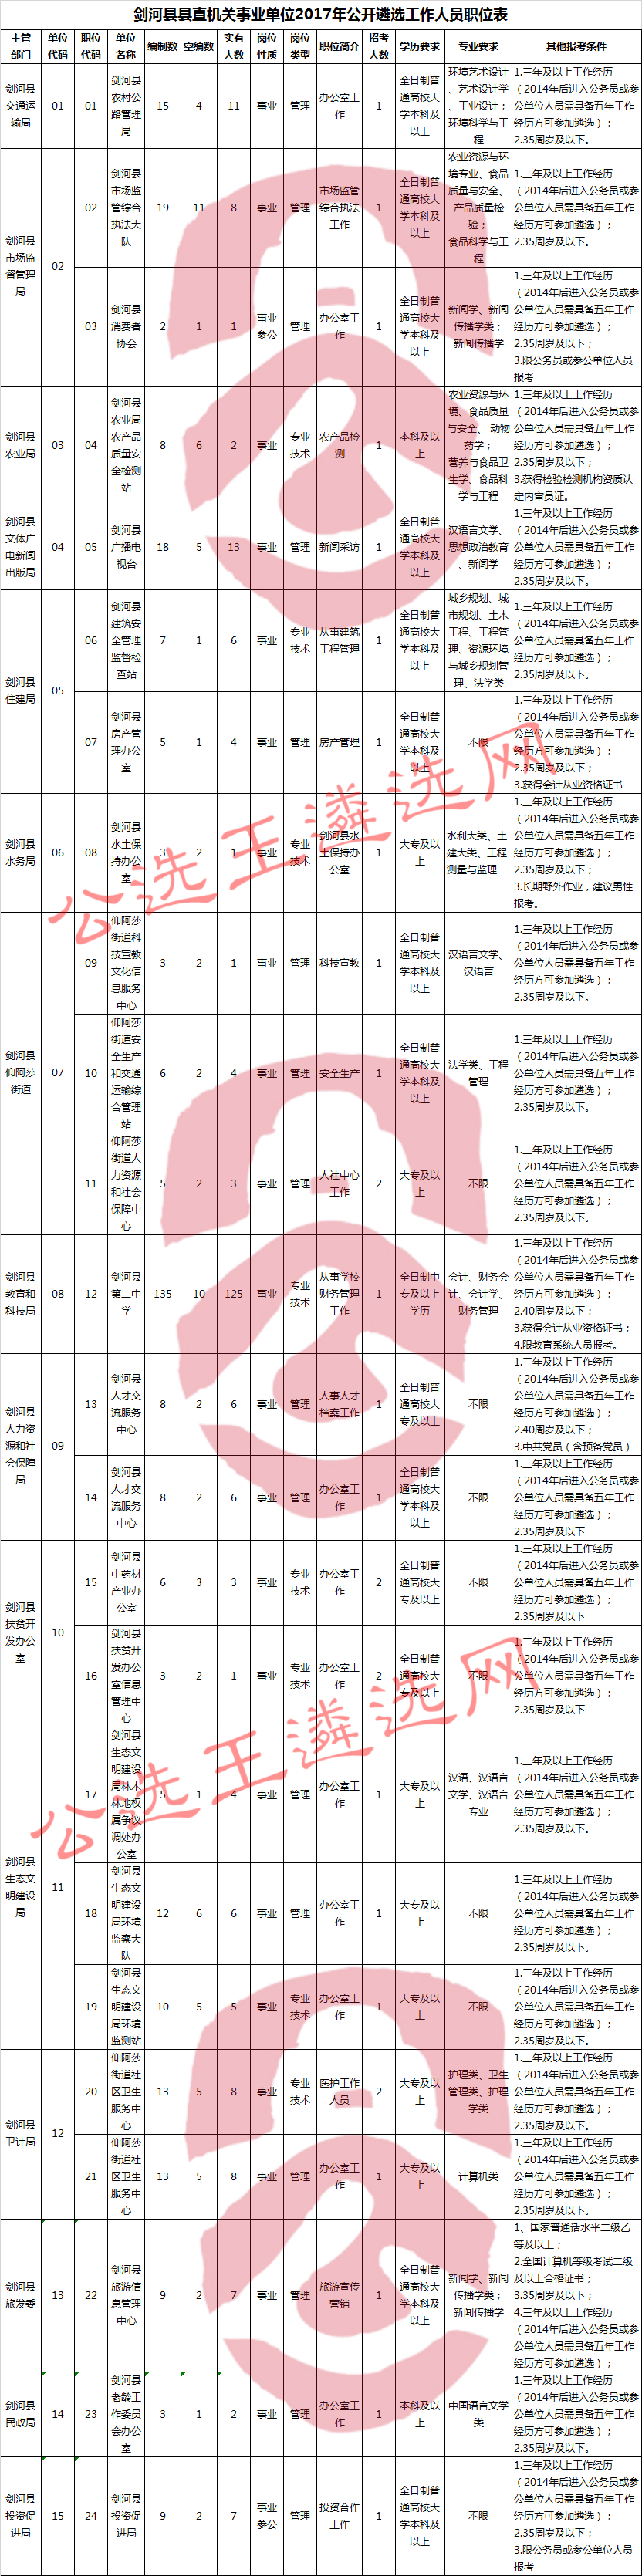 剑河县县直机关事业单位2017年公开遴选工作人员职位表.jpg